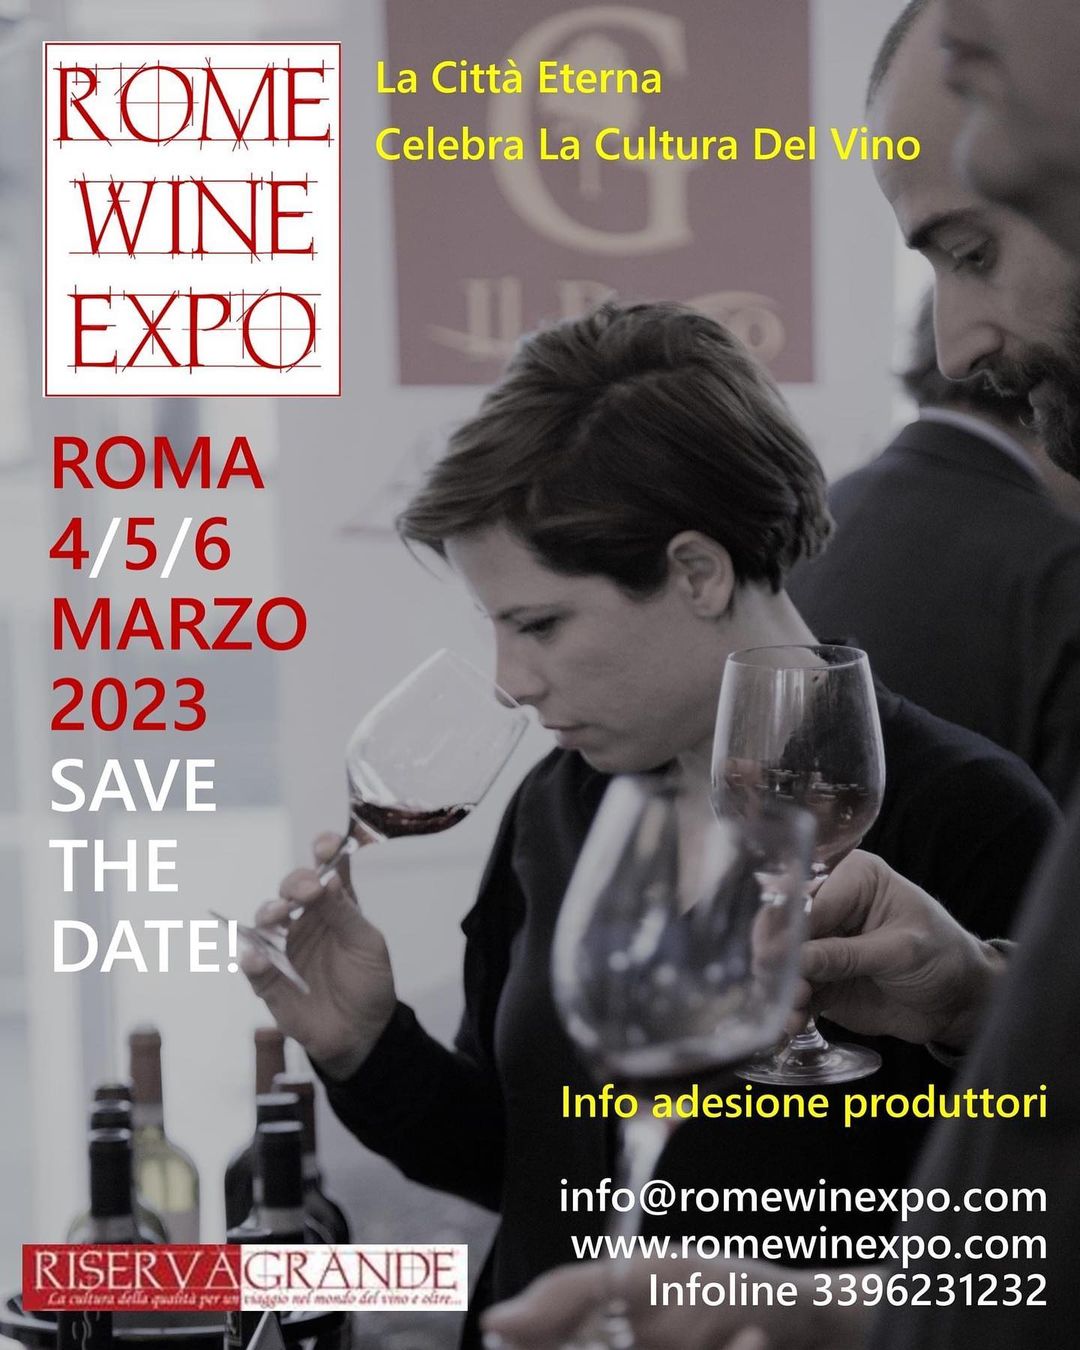 Rome Wine Expo 2023, foto da comunicato stampa